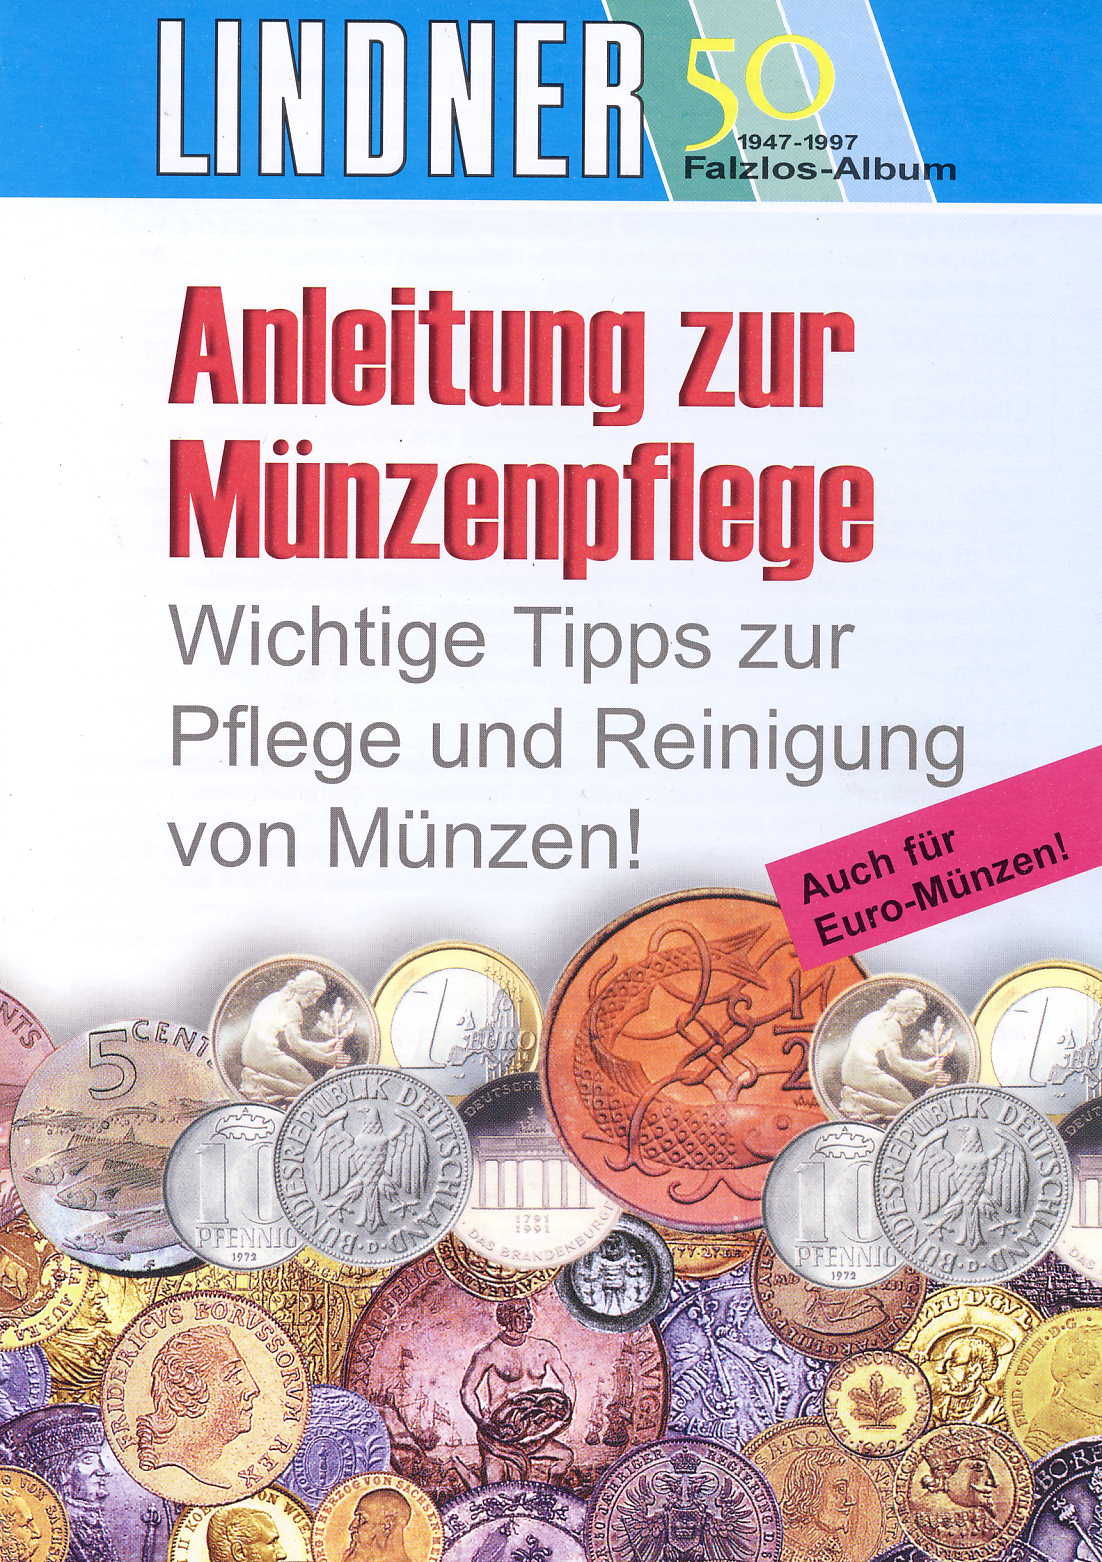 Lindner Anleitung zur Münzpflege